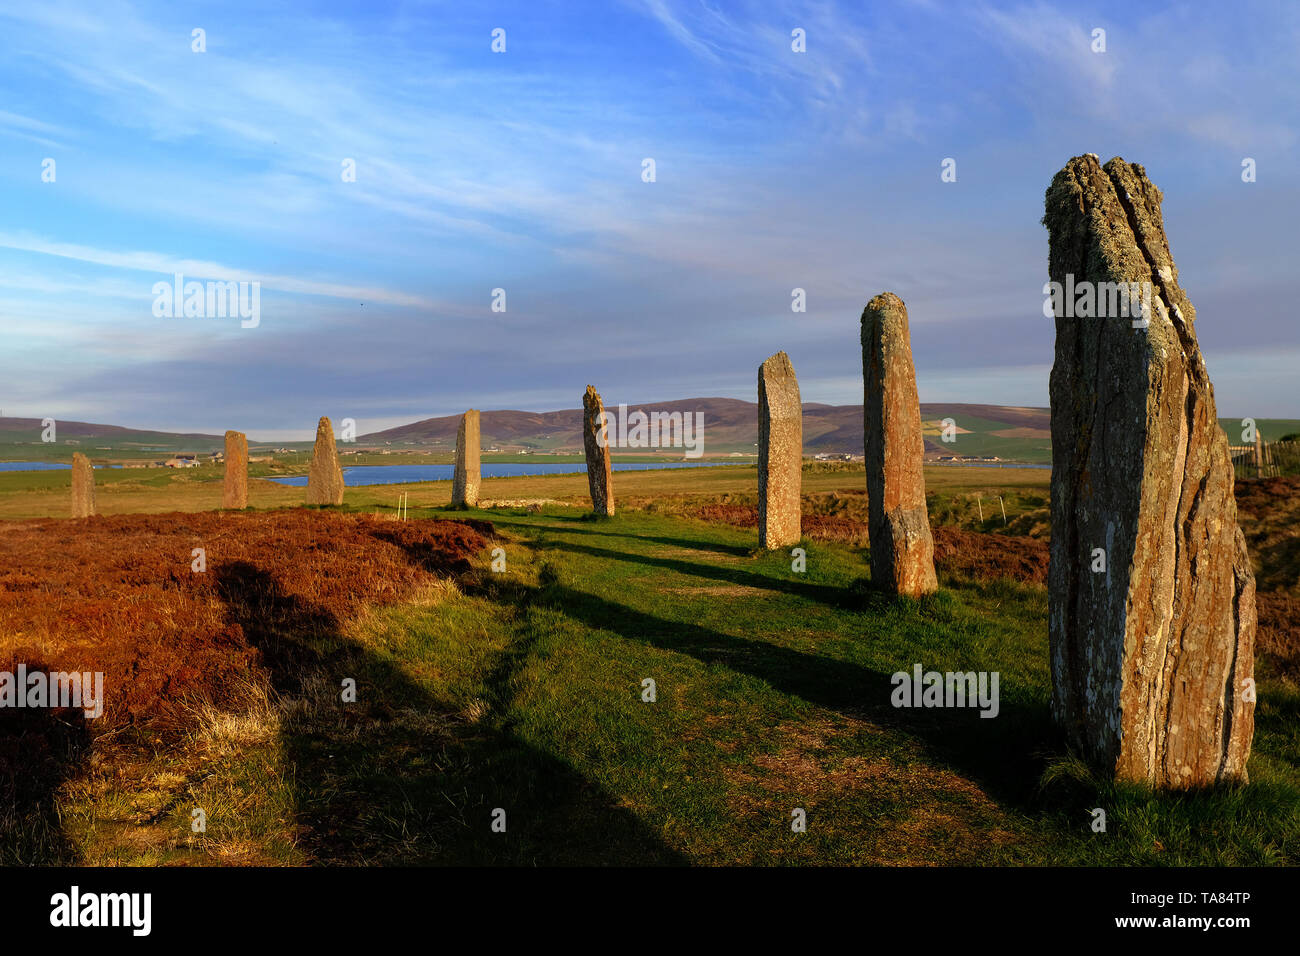 Orkney Inseln, Festland, der Jungsteinzeit stehende Steine der Ring von Brodgar bei Sonnenuntergang Schottland 8. Mai - 19. Reise über Schottland Foto Samantha Z Stockfoto